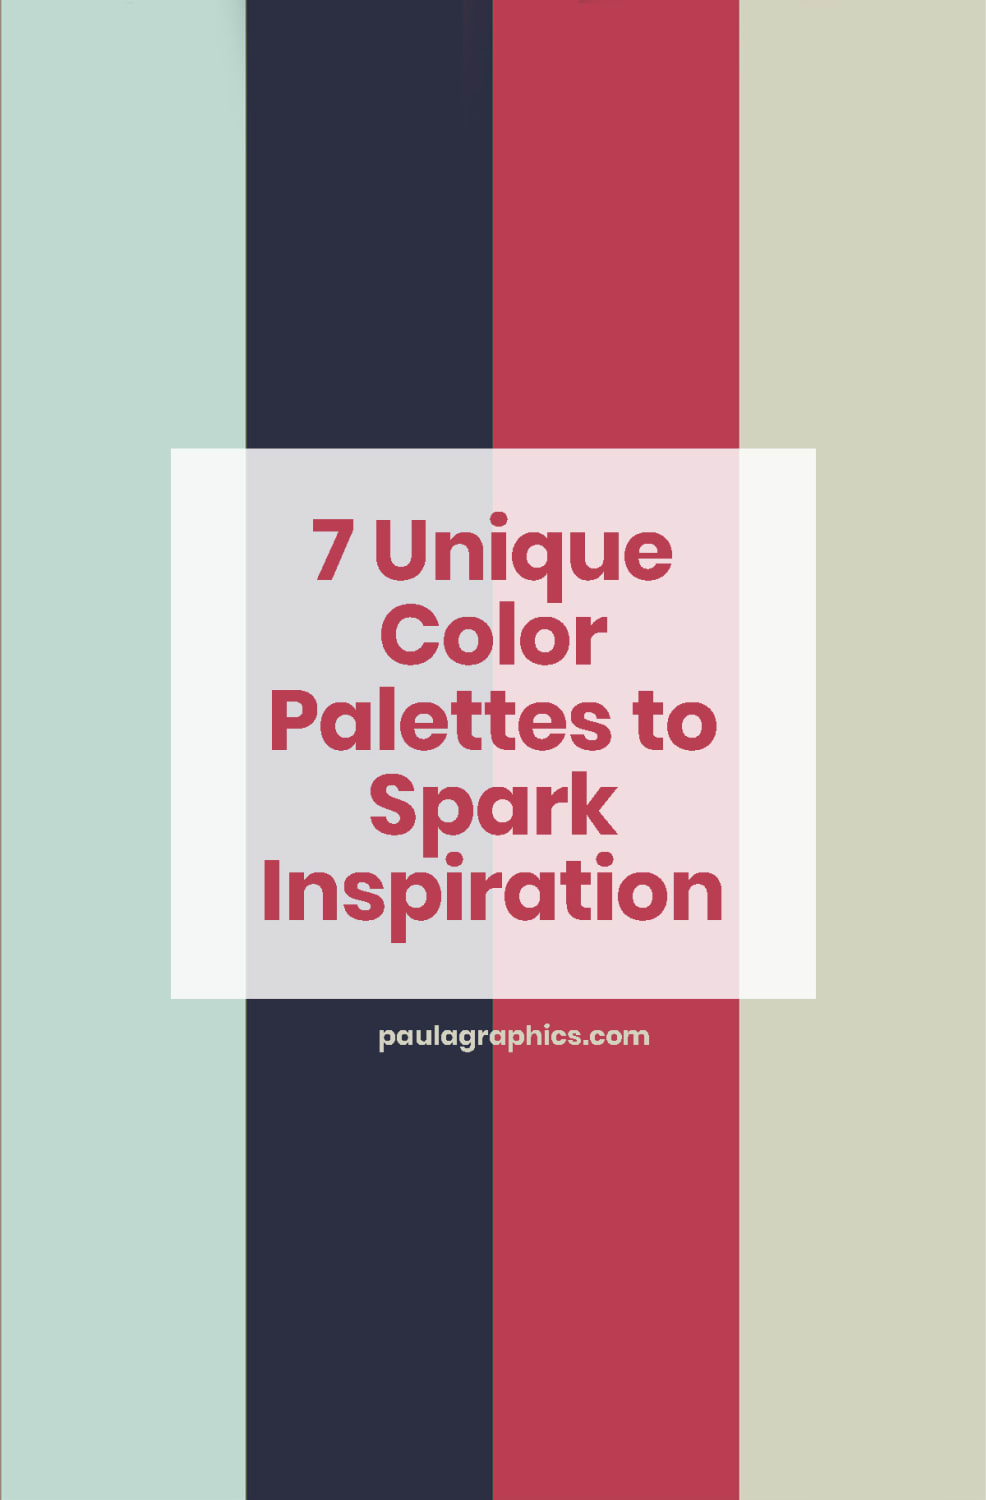 7 Unique Color Palettes to Spark Inspiration